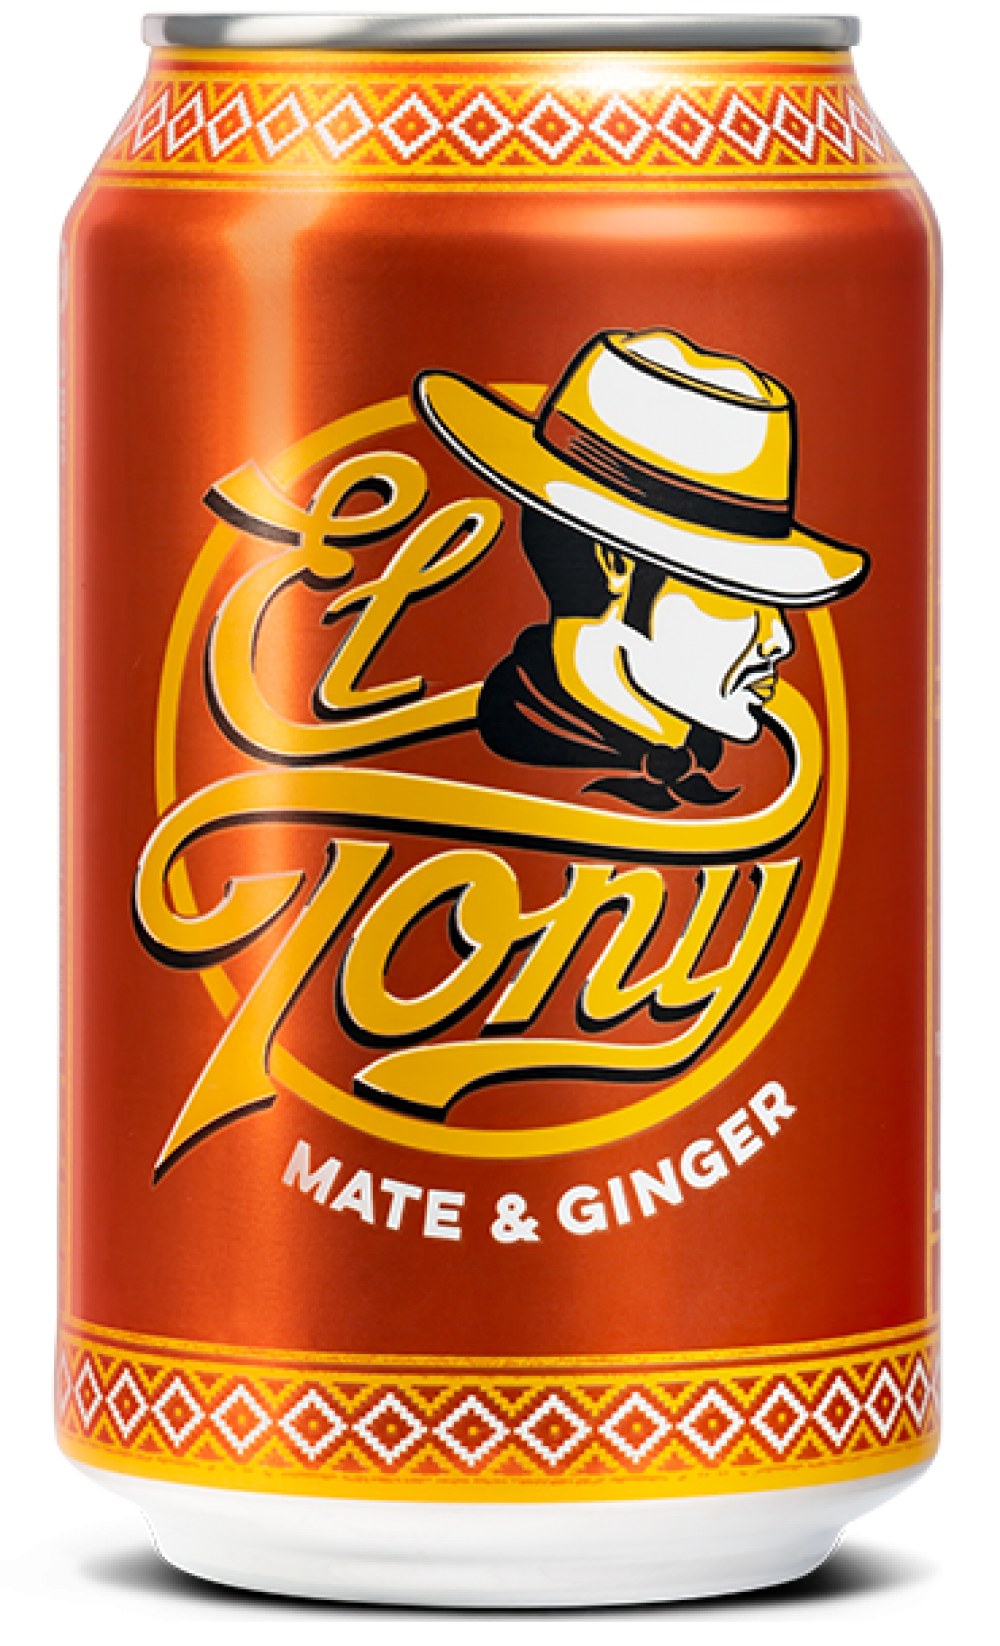 El Tony
«Mate & Ginger»